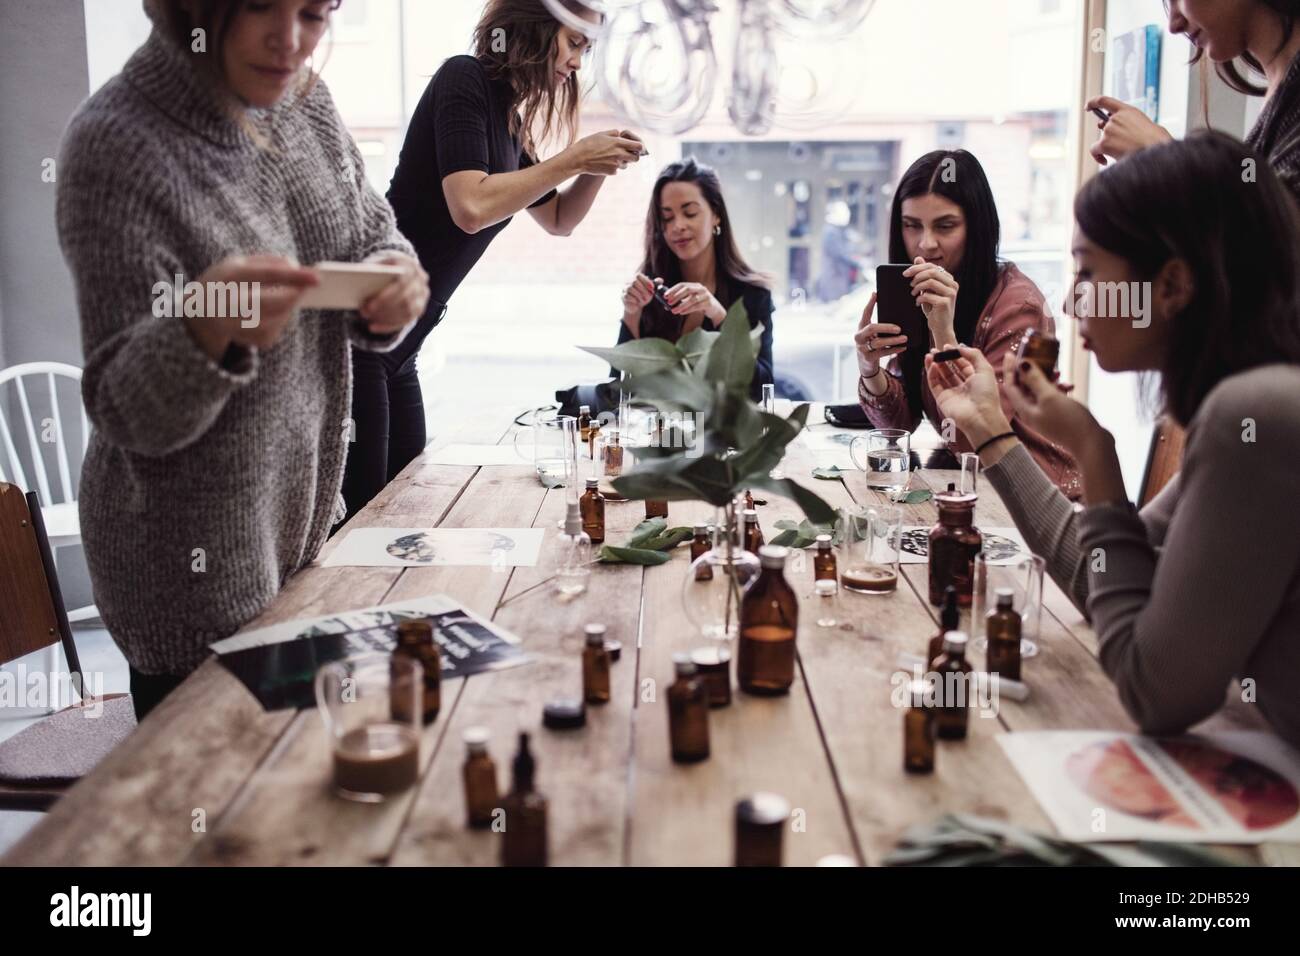 Multiethnische weibliche Mitarbeiter fotografieren Parfums auf dem Tisch in der Werkstatt Stockfoto